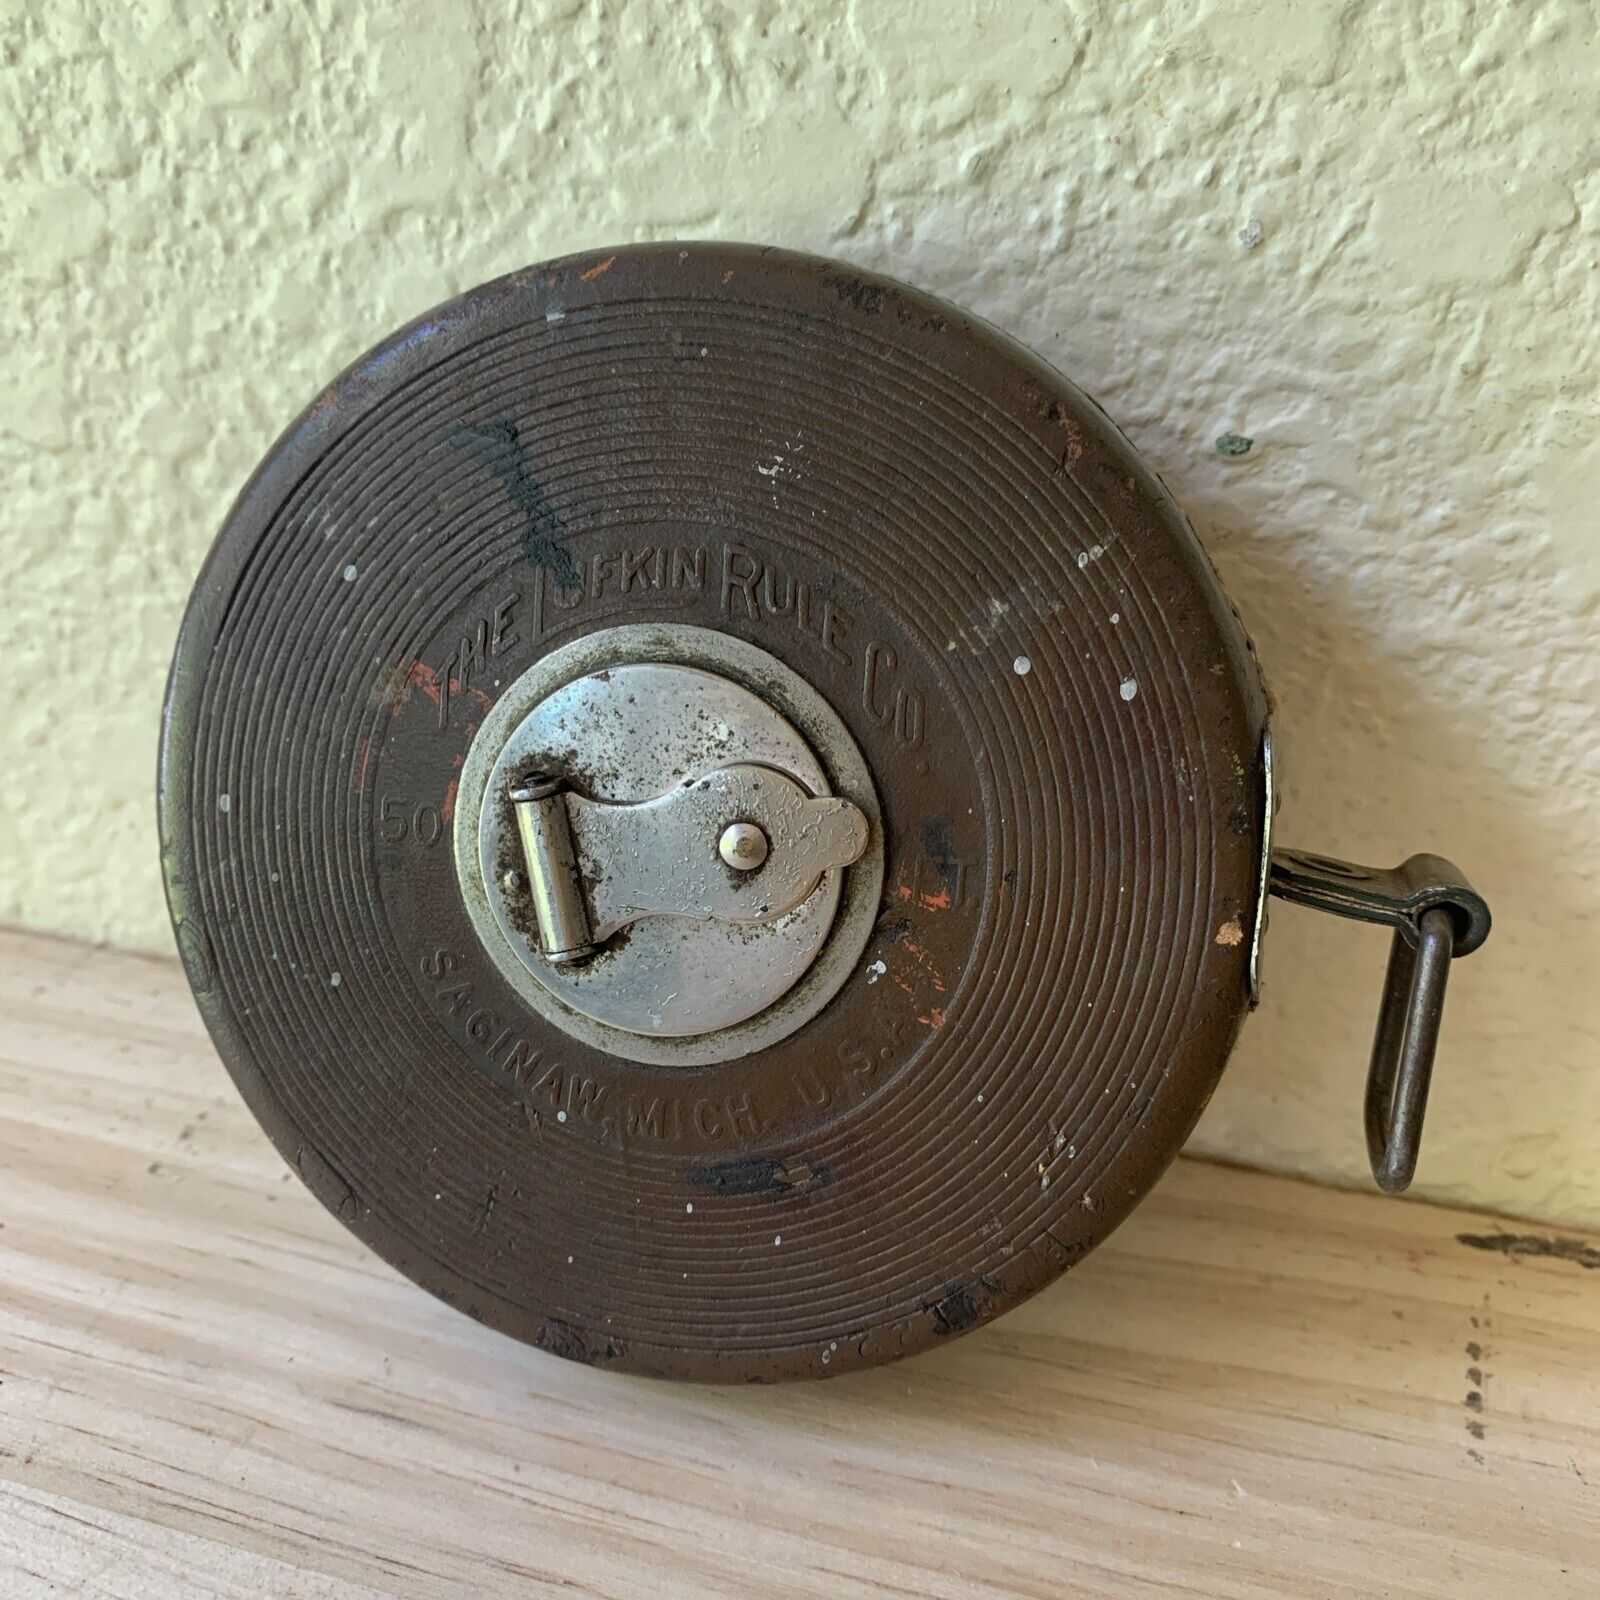 Antique Vtg Leather Wind Case Lufkin Rule Co 50ft Sterling Linen Tape Measure